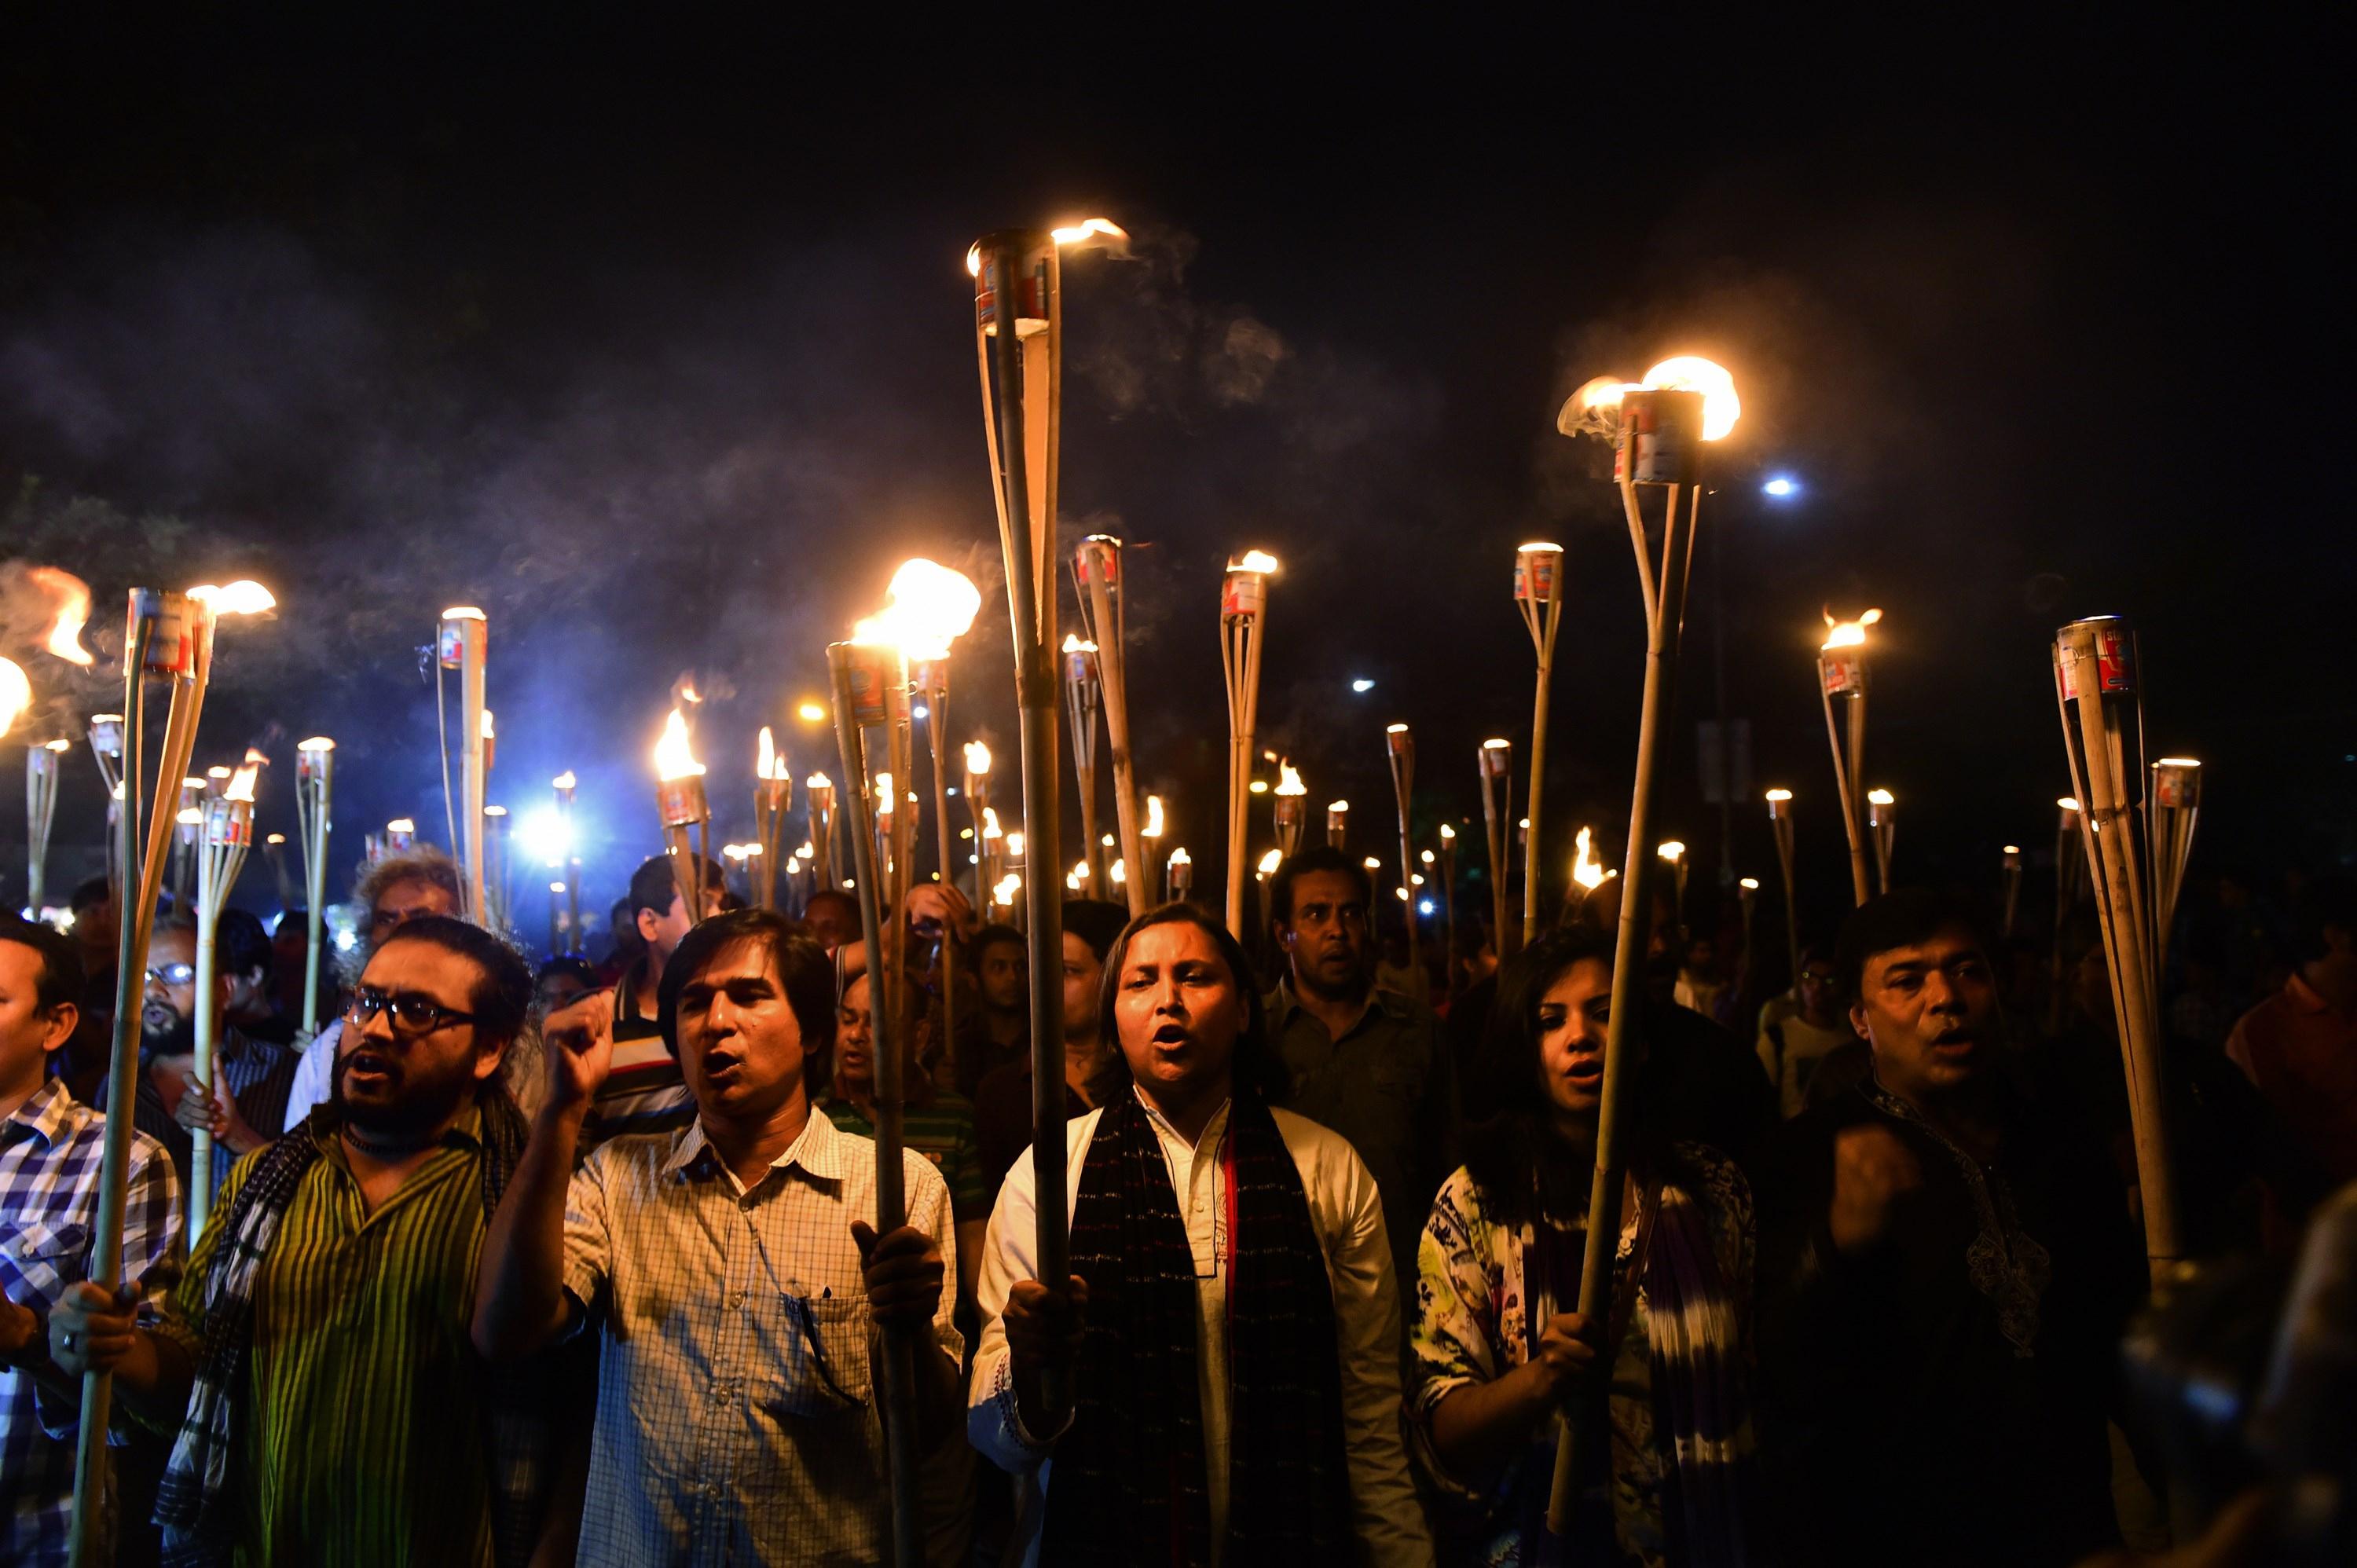 Aktivister i Bangladesh protesterade i Dhaka 2 November 2015, efter att publicisten Faisal Arefin Dipan mördats den 31 oktober av extremister.  (Foto: Munir Uz Zaman/AFP/Getty Images)